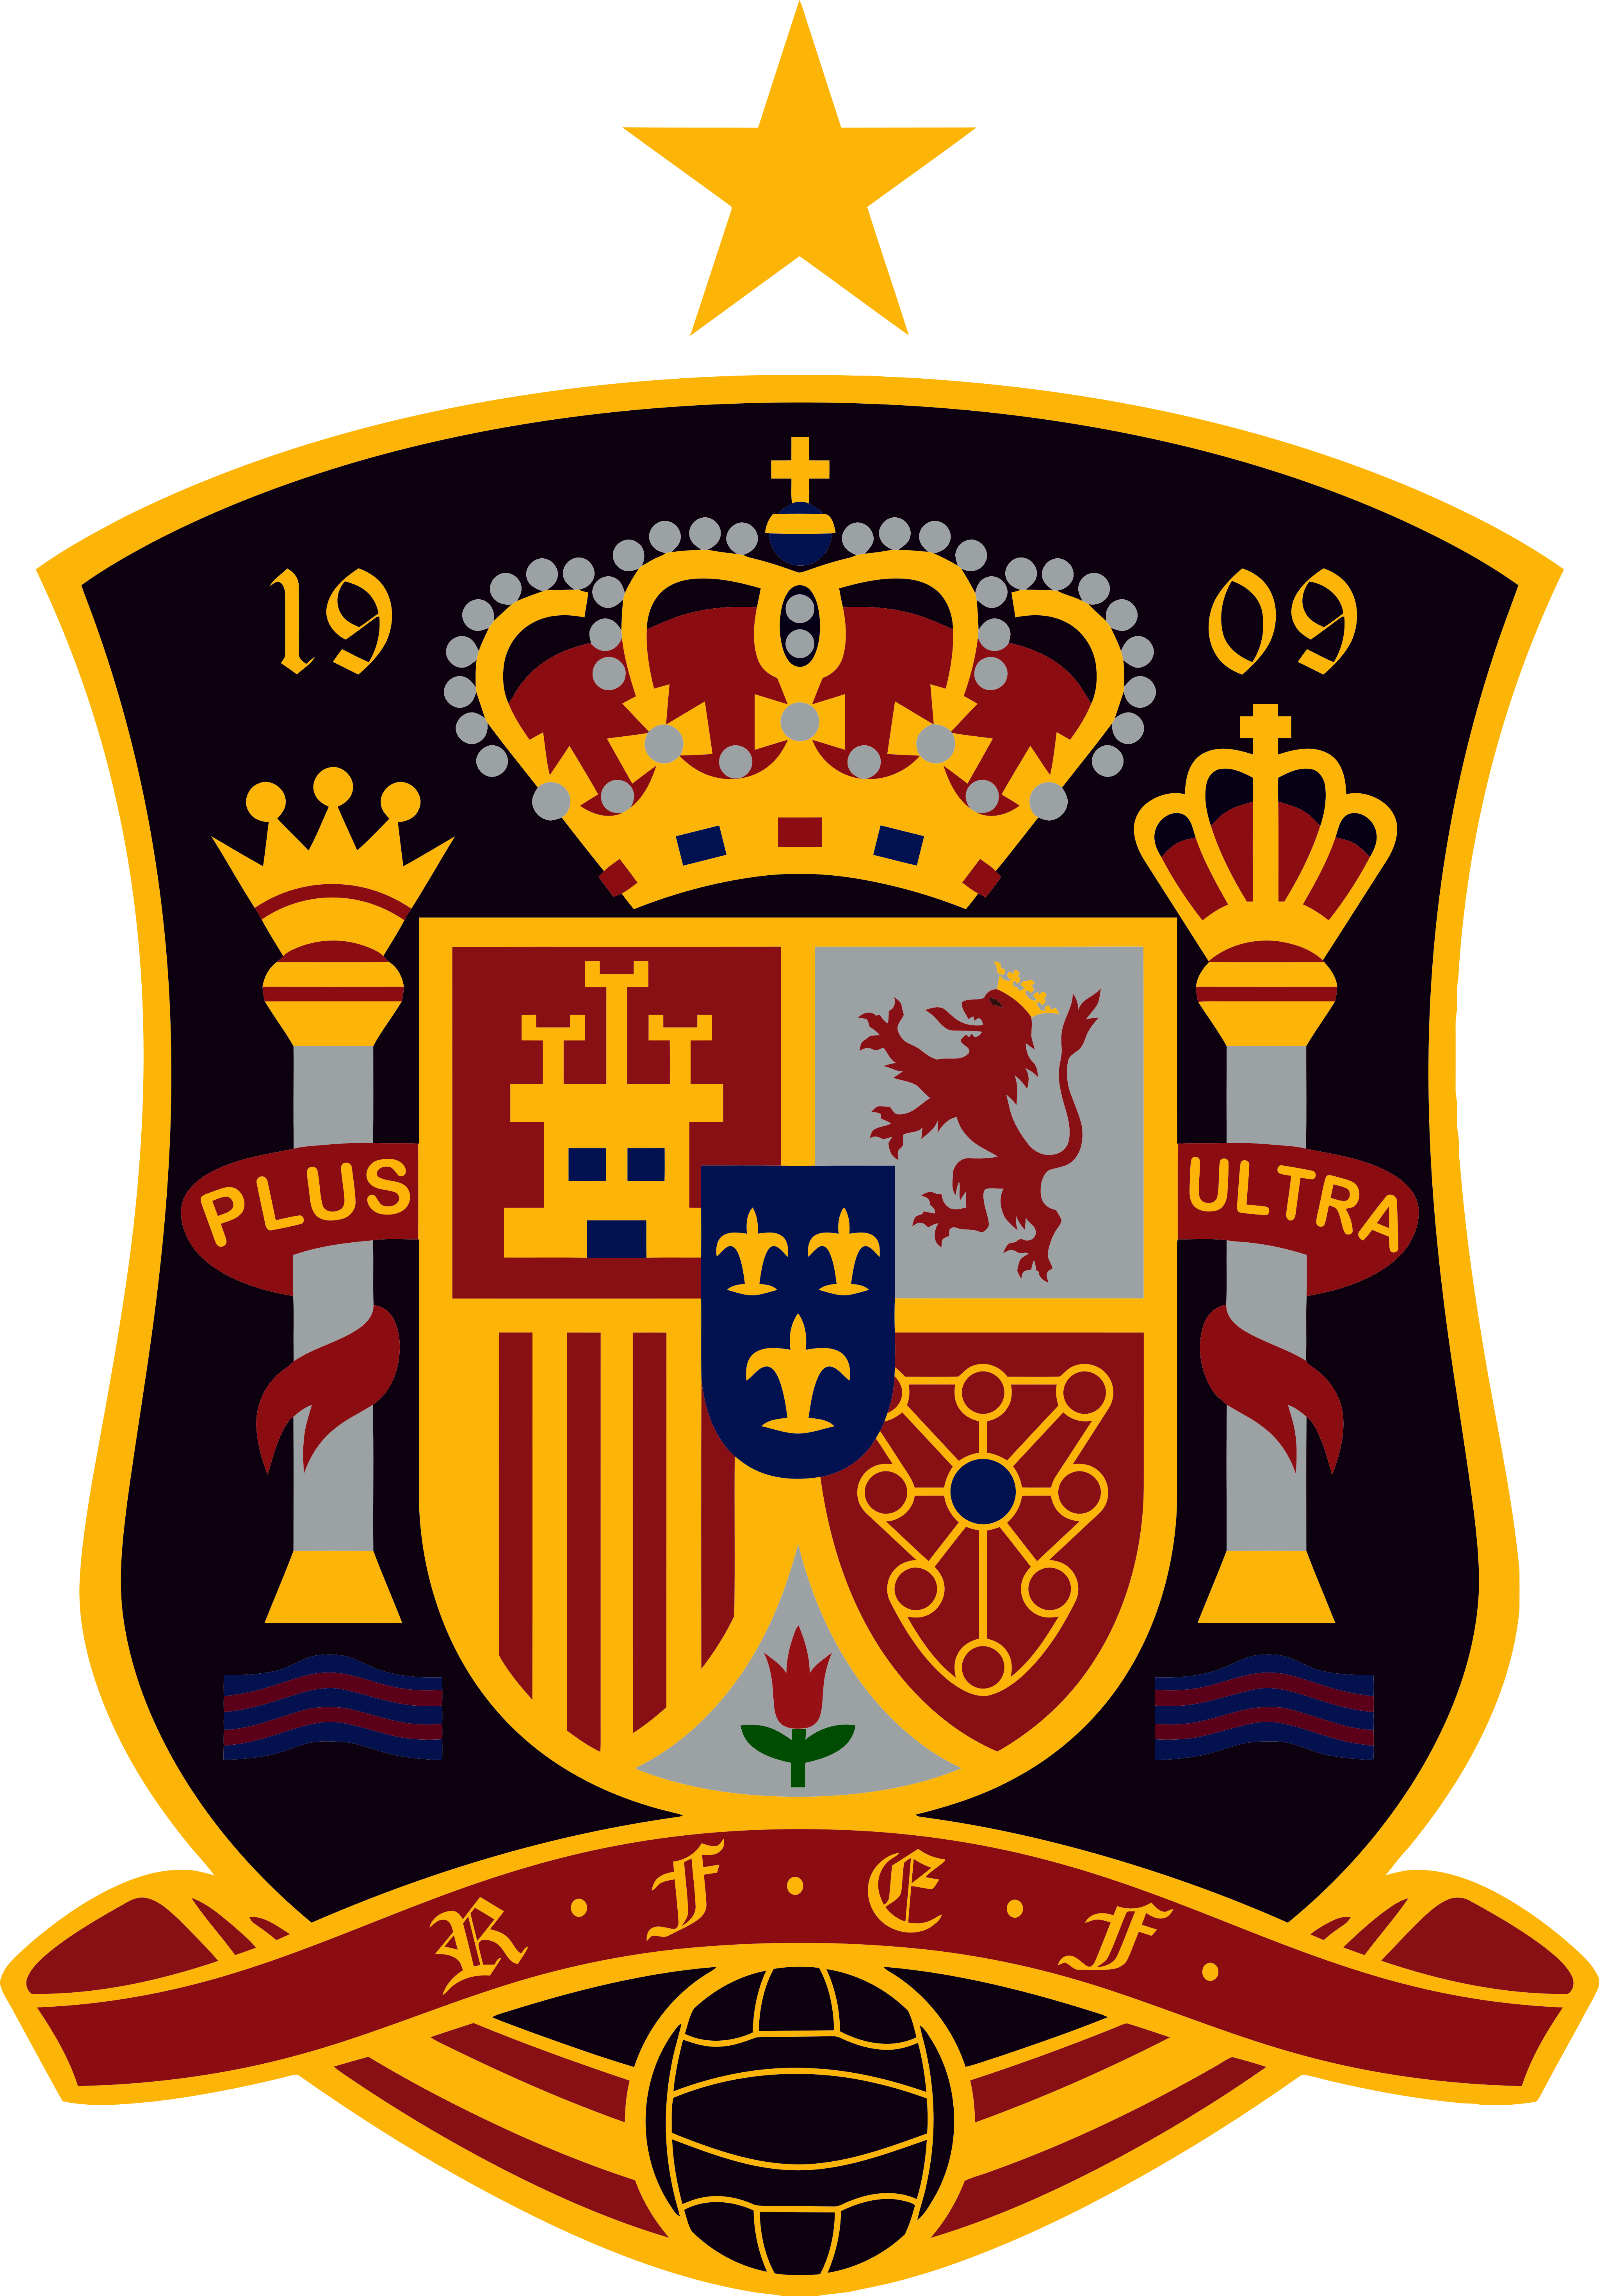 spain national football team logo 1 - Spain National Football Team Logo